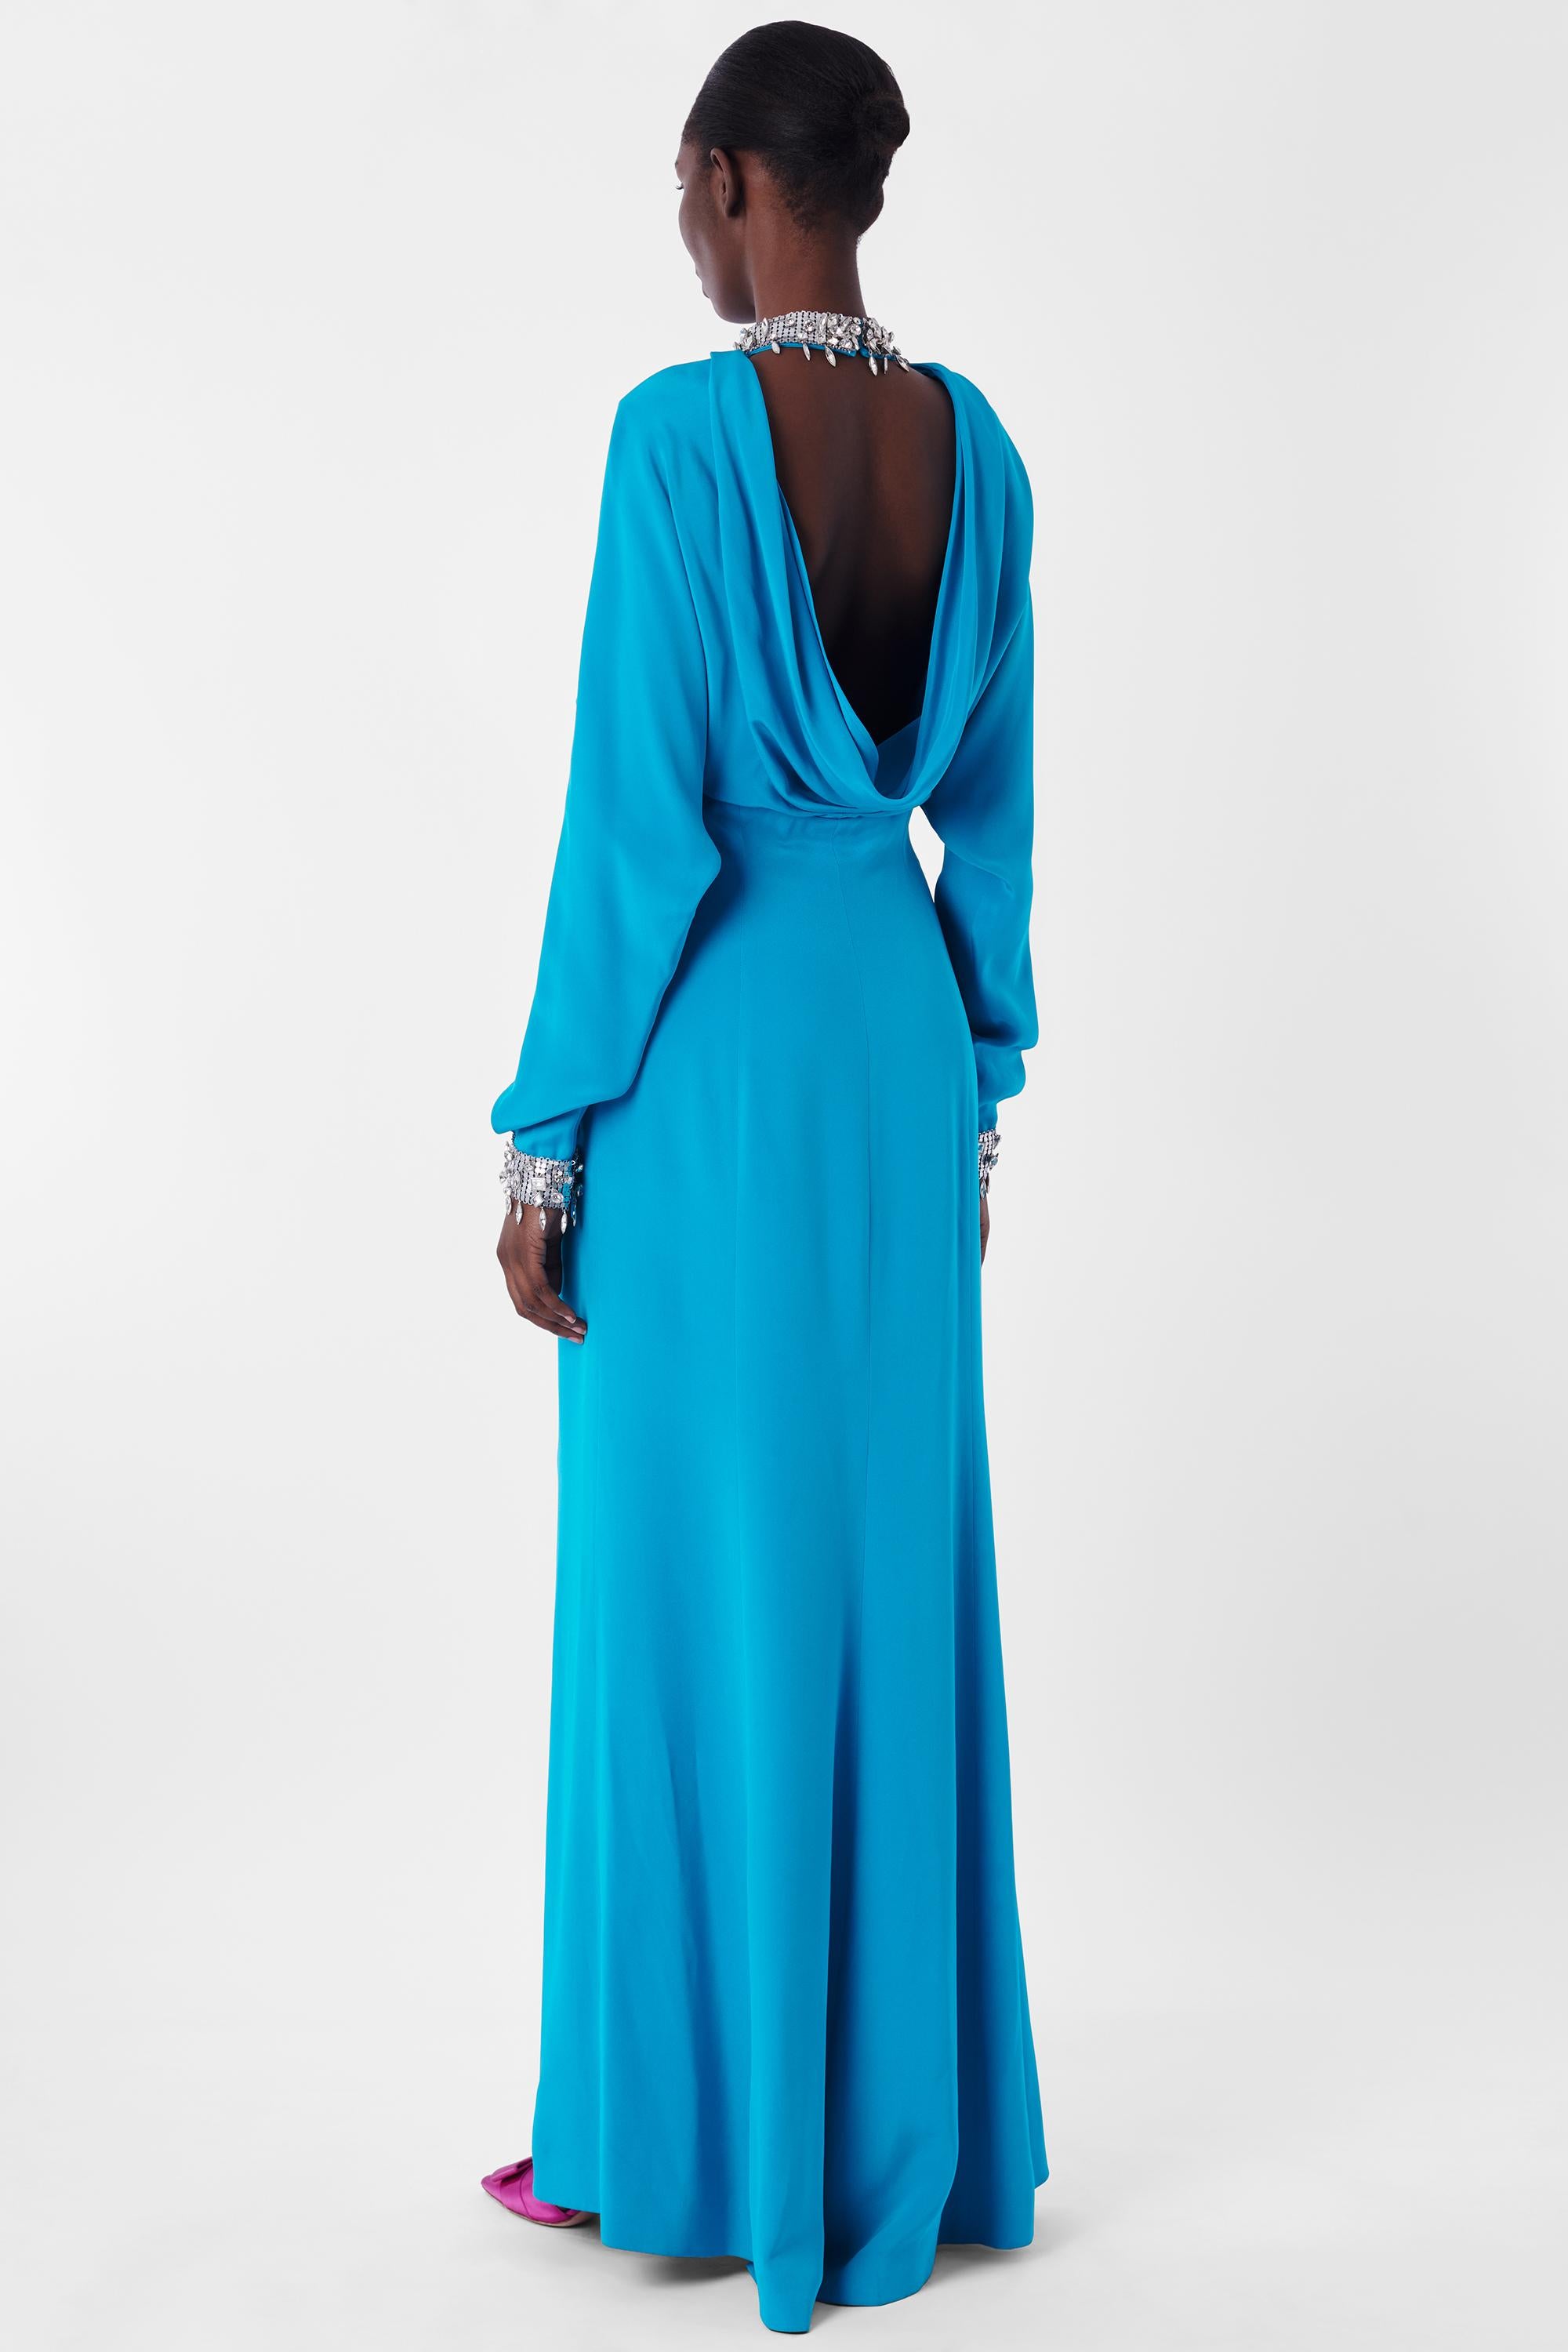 Robe bleue de Thierry Mugler 1995 Couture. Elle est dotée d'un col et de poignets en argent diamanté, d'une encolure en trou de serrure, de manches longues et d'un dos drapé de longueur maxi avec une fente sur le devant et une fermeture à glissière